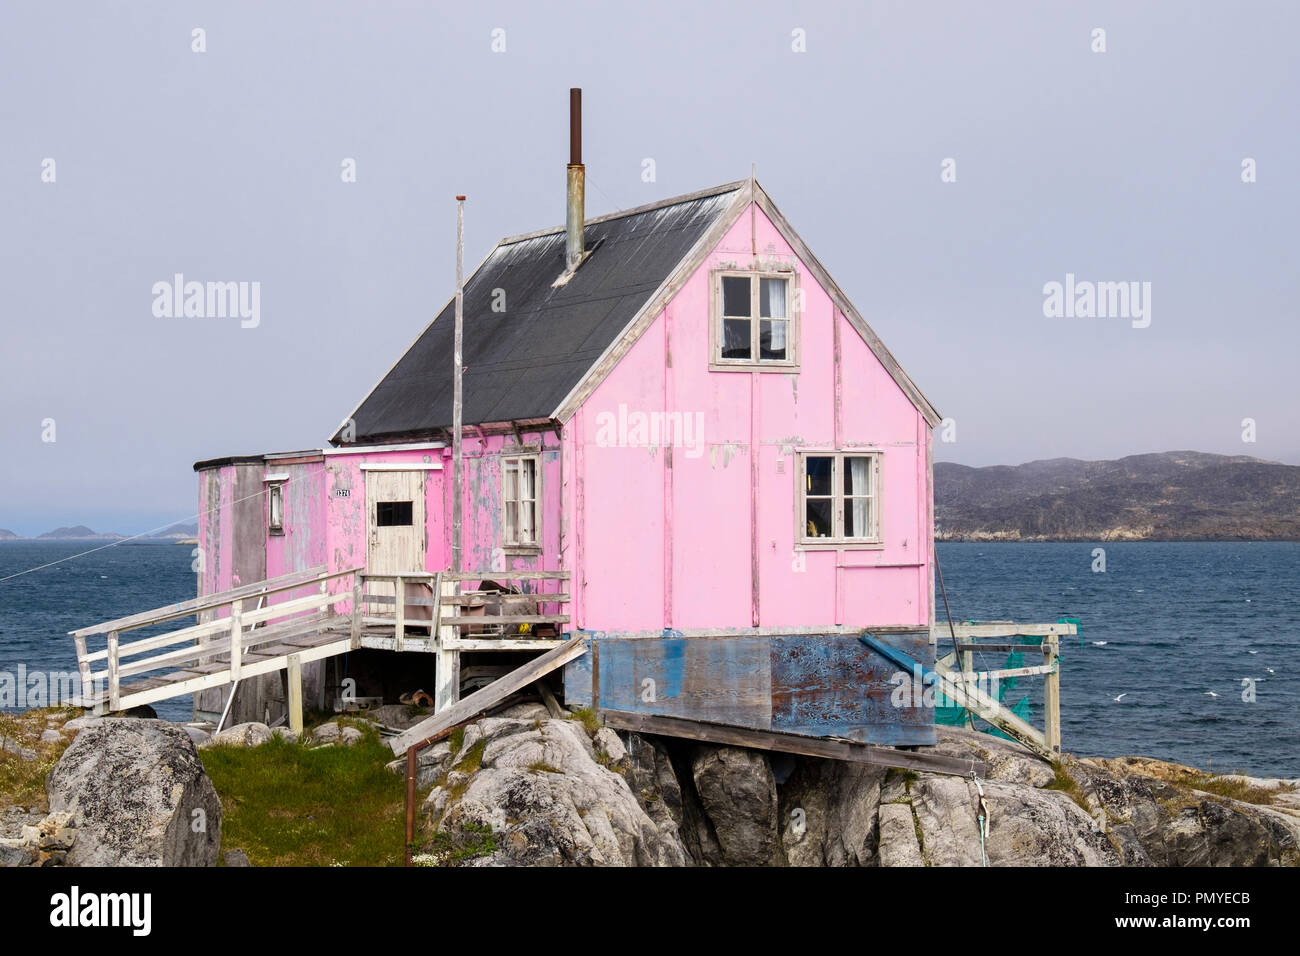 Typische Inuit Holzhaus lackiert rosa mit Fischernetze trocknen außerhalb. Itilleq, Qeqqata, Grönland. Auf einer kleinen Insel 2 km nördlich des Polarkreises Stockfoto